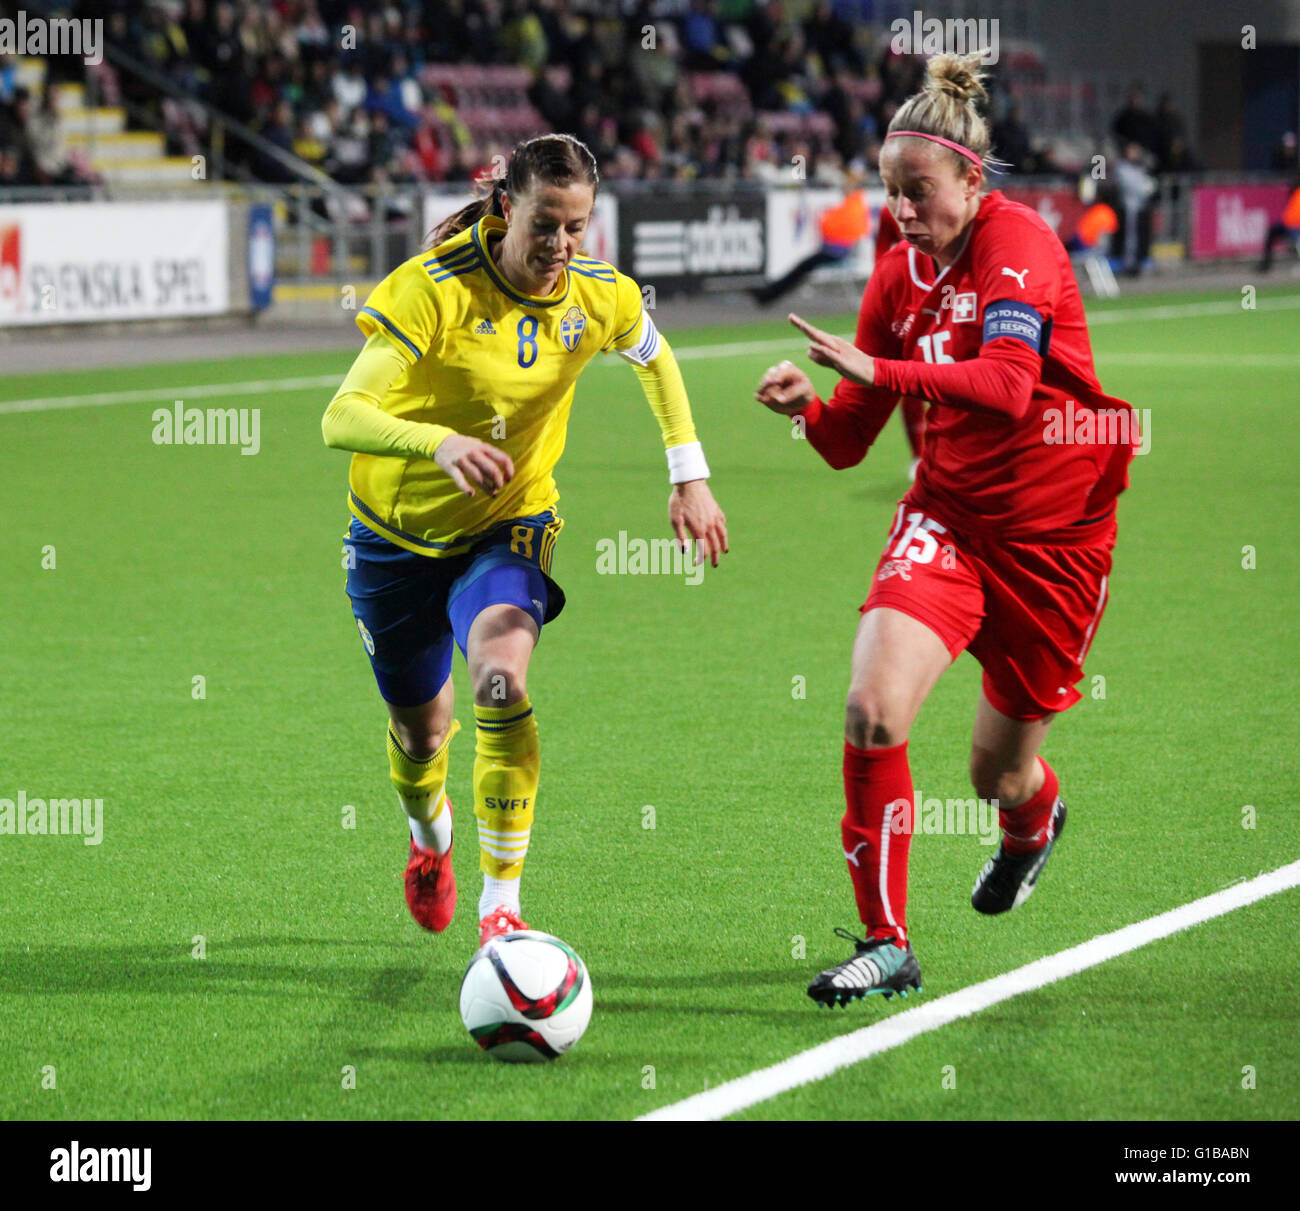 LOTTA SCHELIN football joueur professionnel suédois en France Lyon,ici dans l'équipe nationale contre Caroline Abbé Suisse Banque D'Images